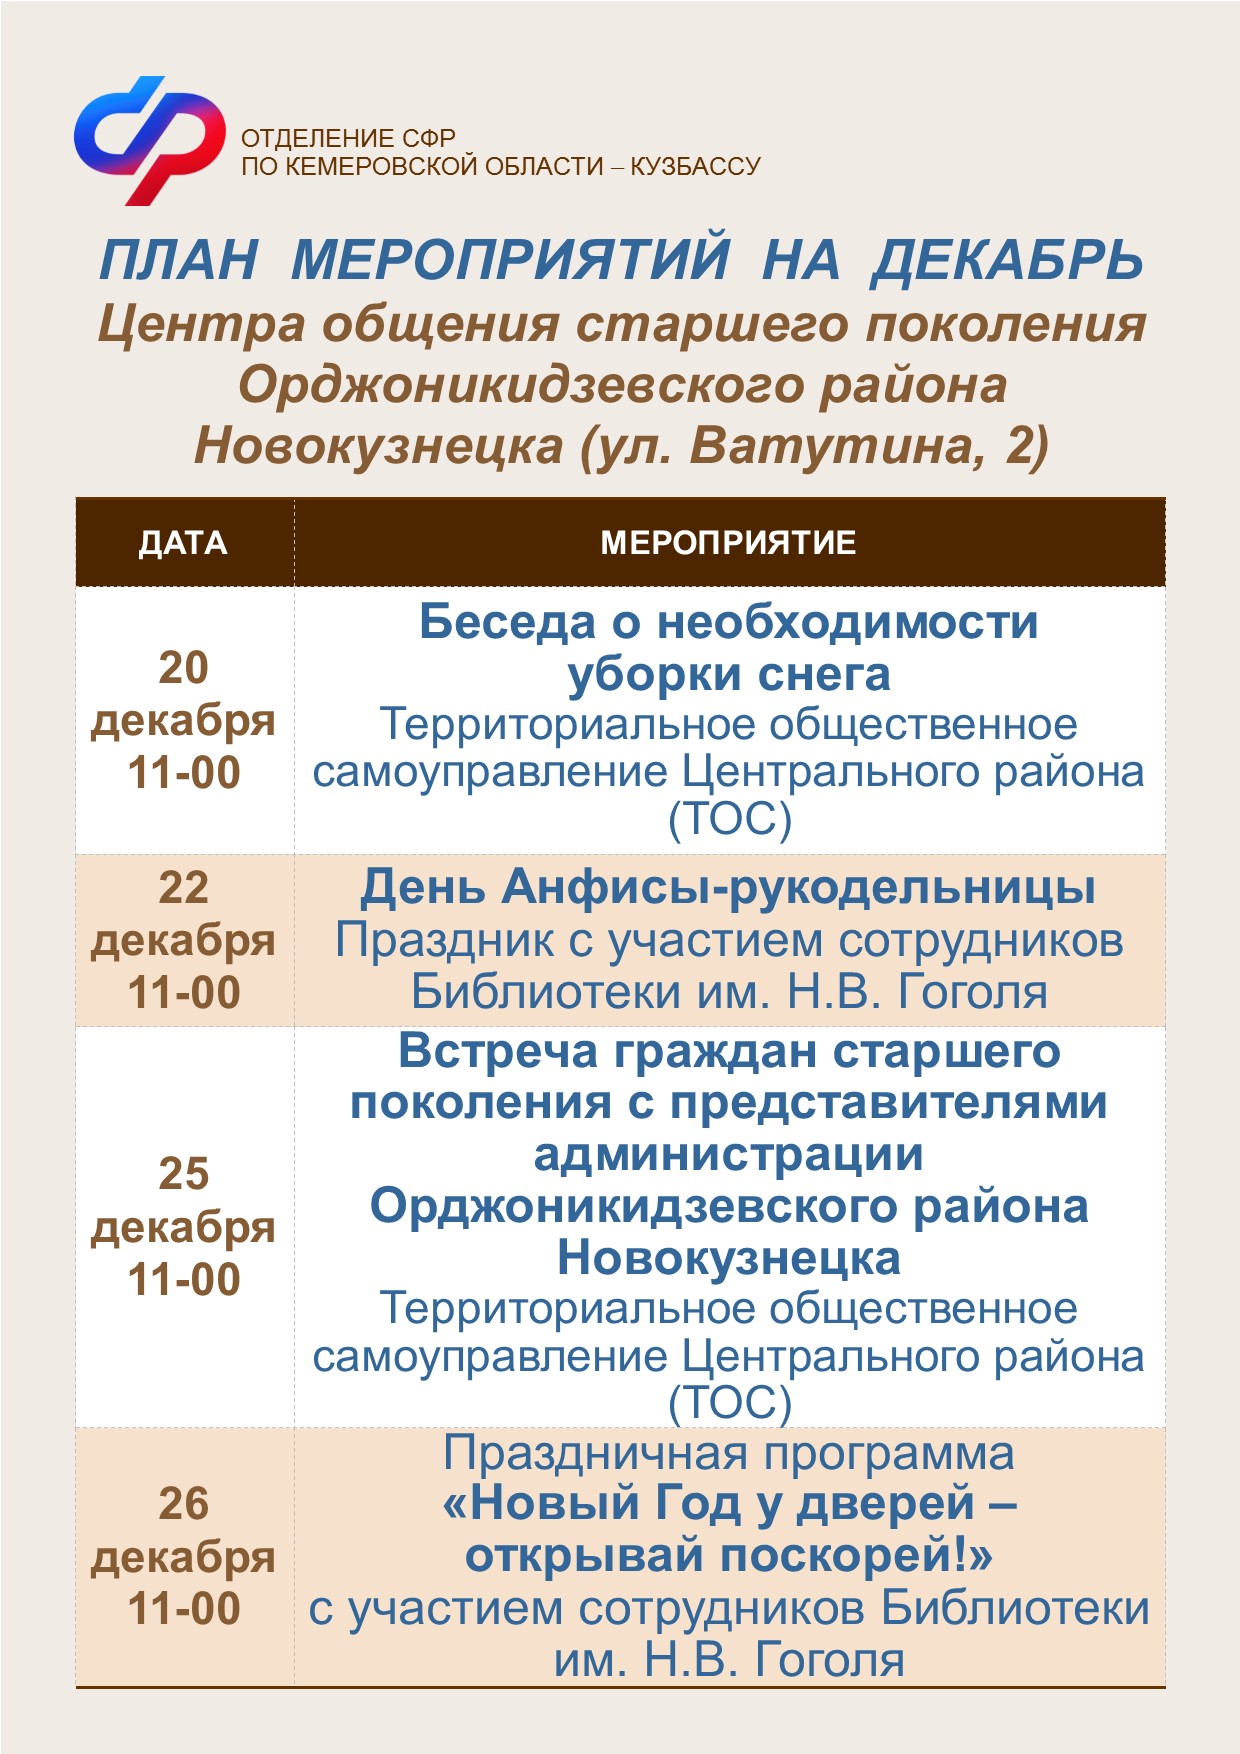 Планы работы на декабрь Центров общения старшего поколения города Новокузнецка